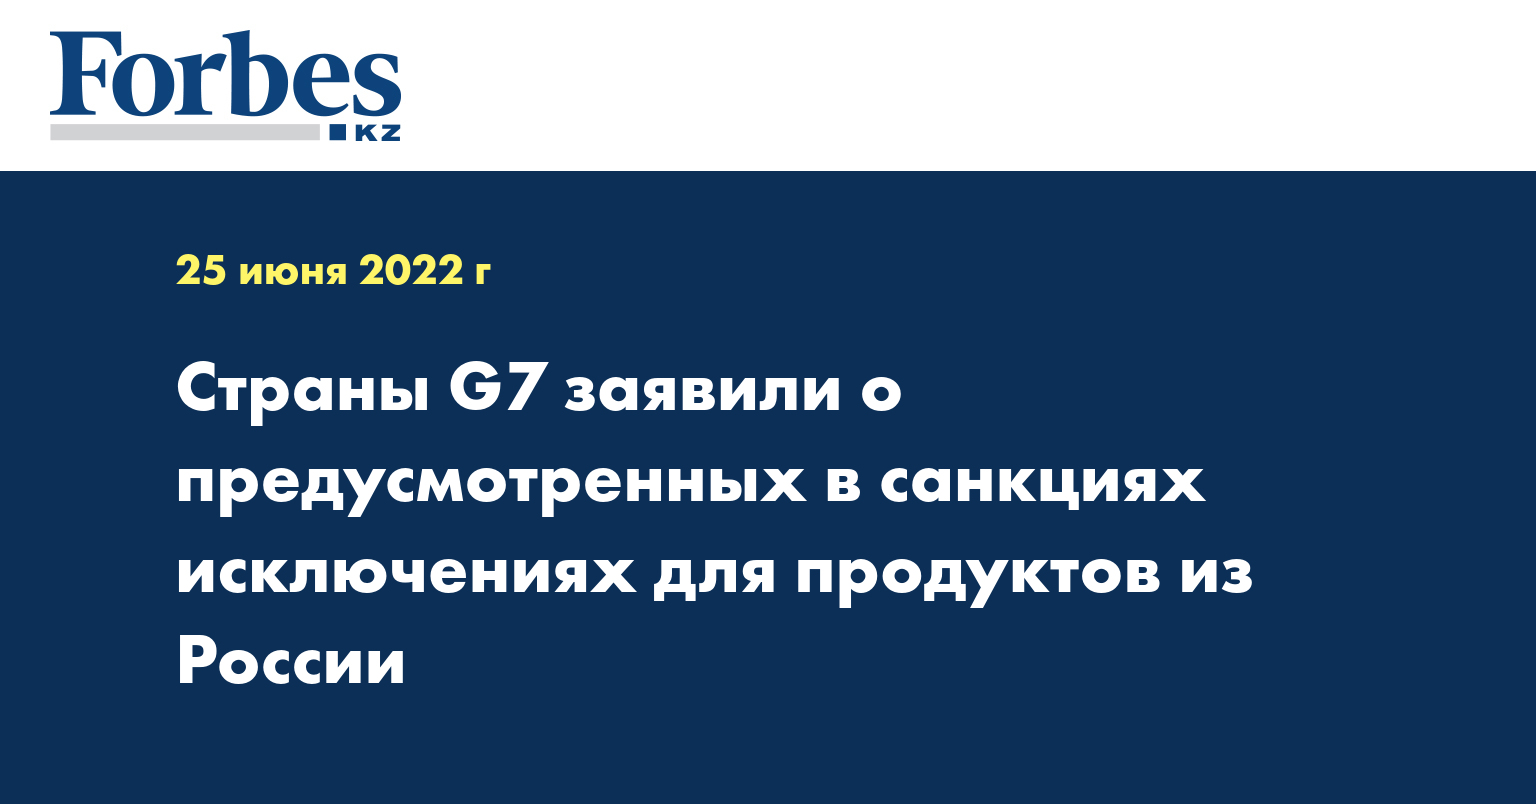 Страны G7 заявили о предусмотренных в санкциях исключениях для продуктов из России